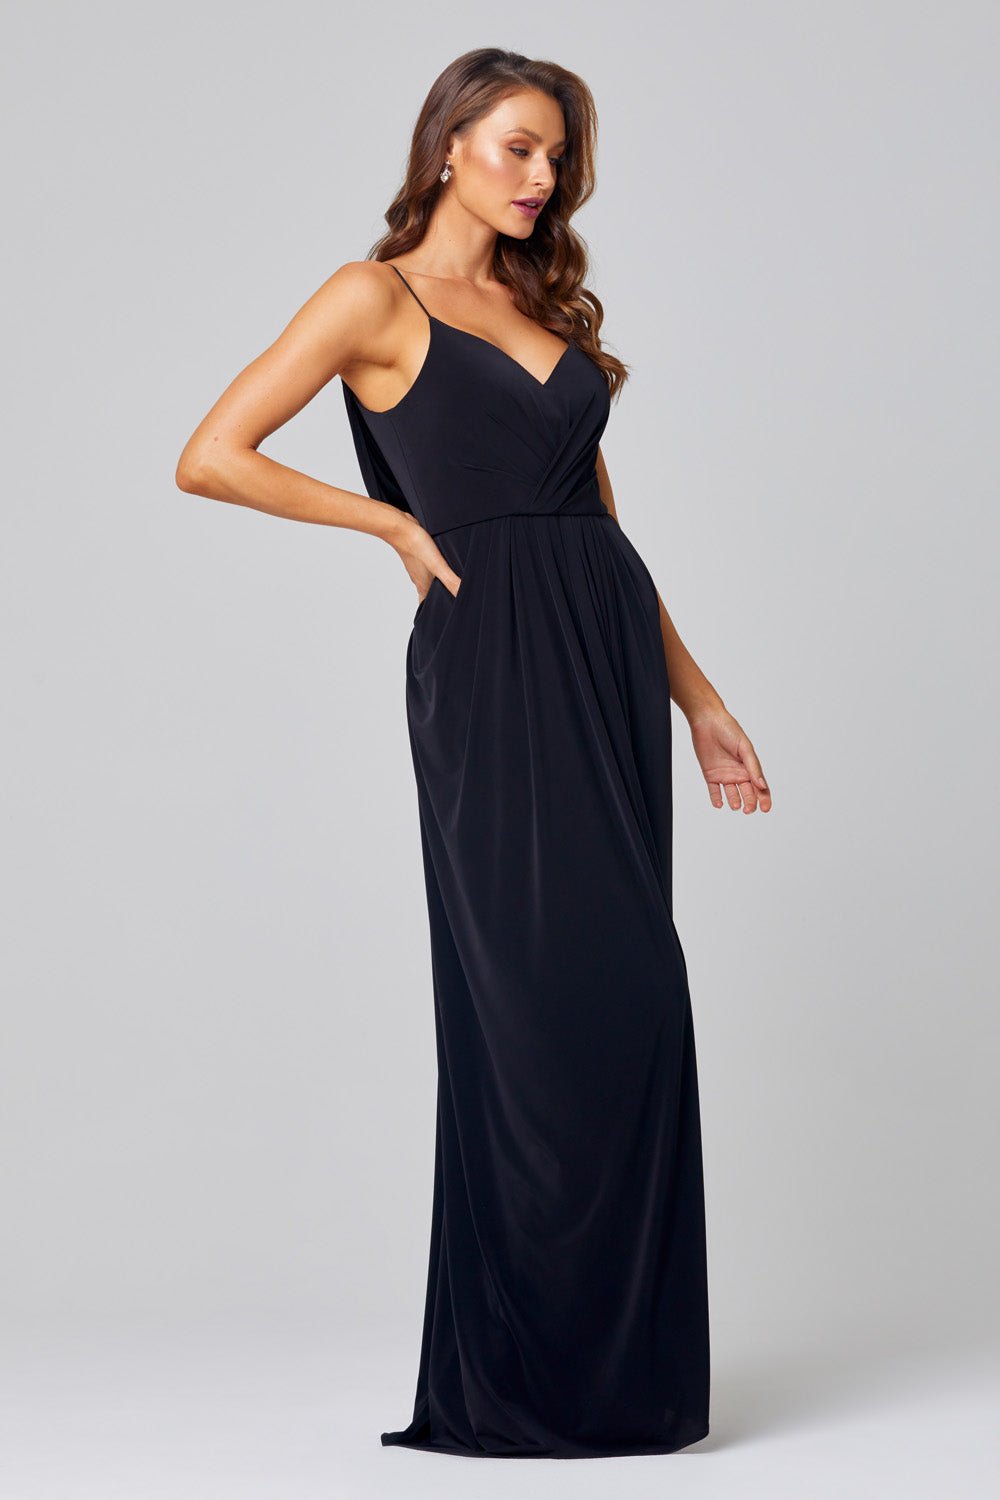 Ebonie Dress By Tania Olsen Sizes 20 - 30 TO847 - ElissaJay Boutique